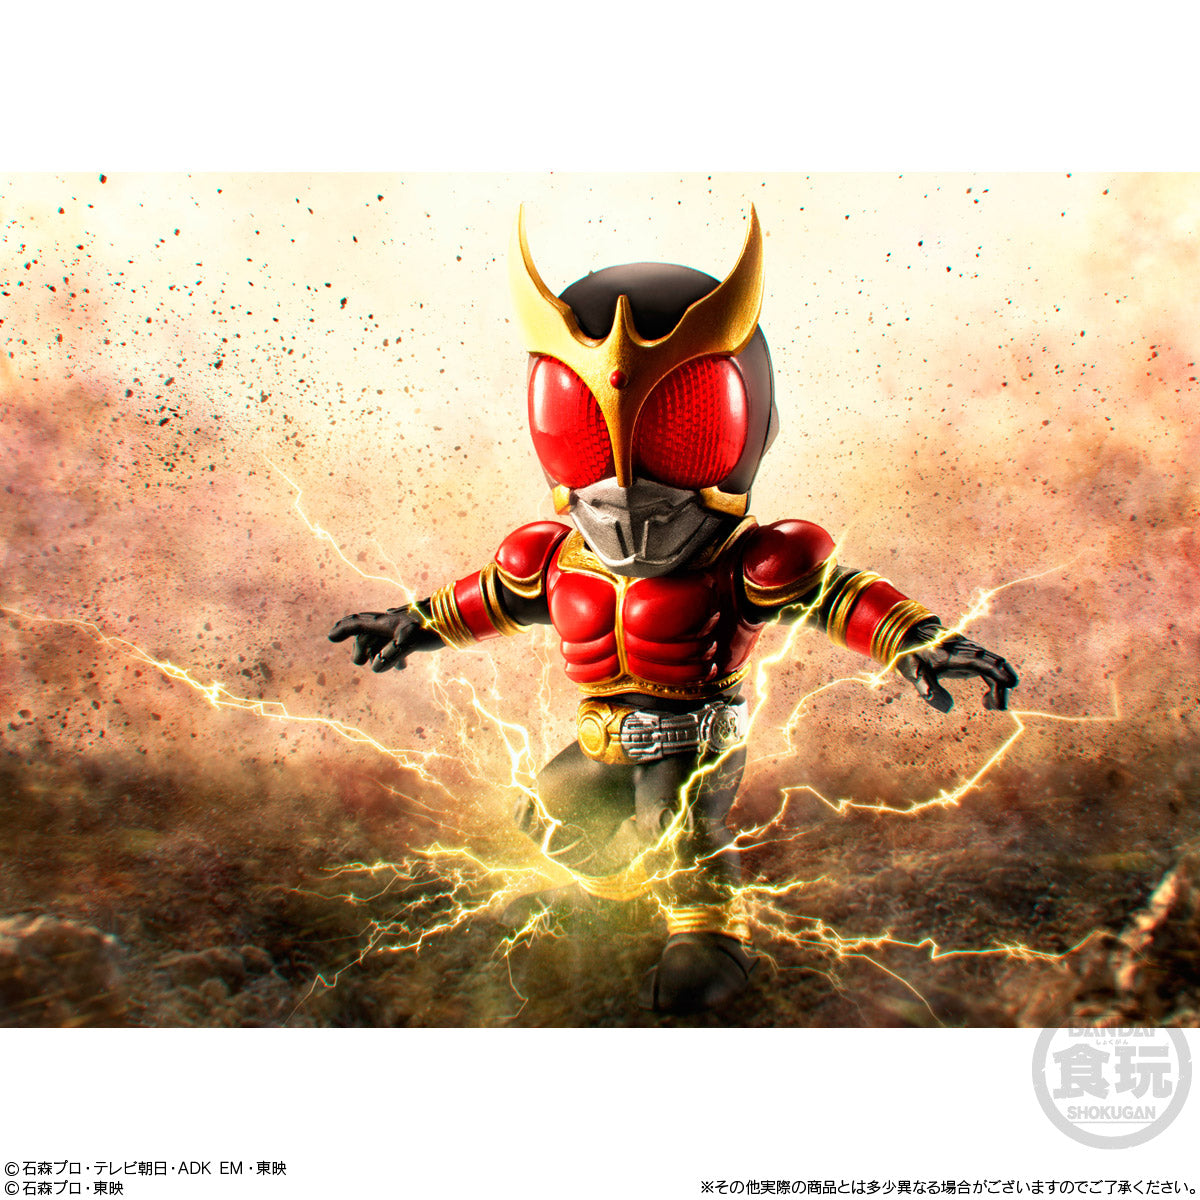 Converge Motion Kamen Rider